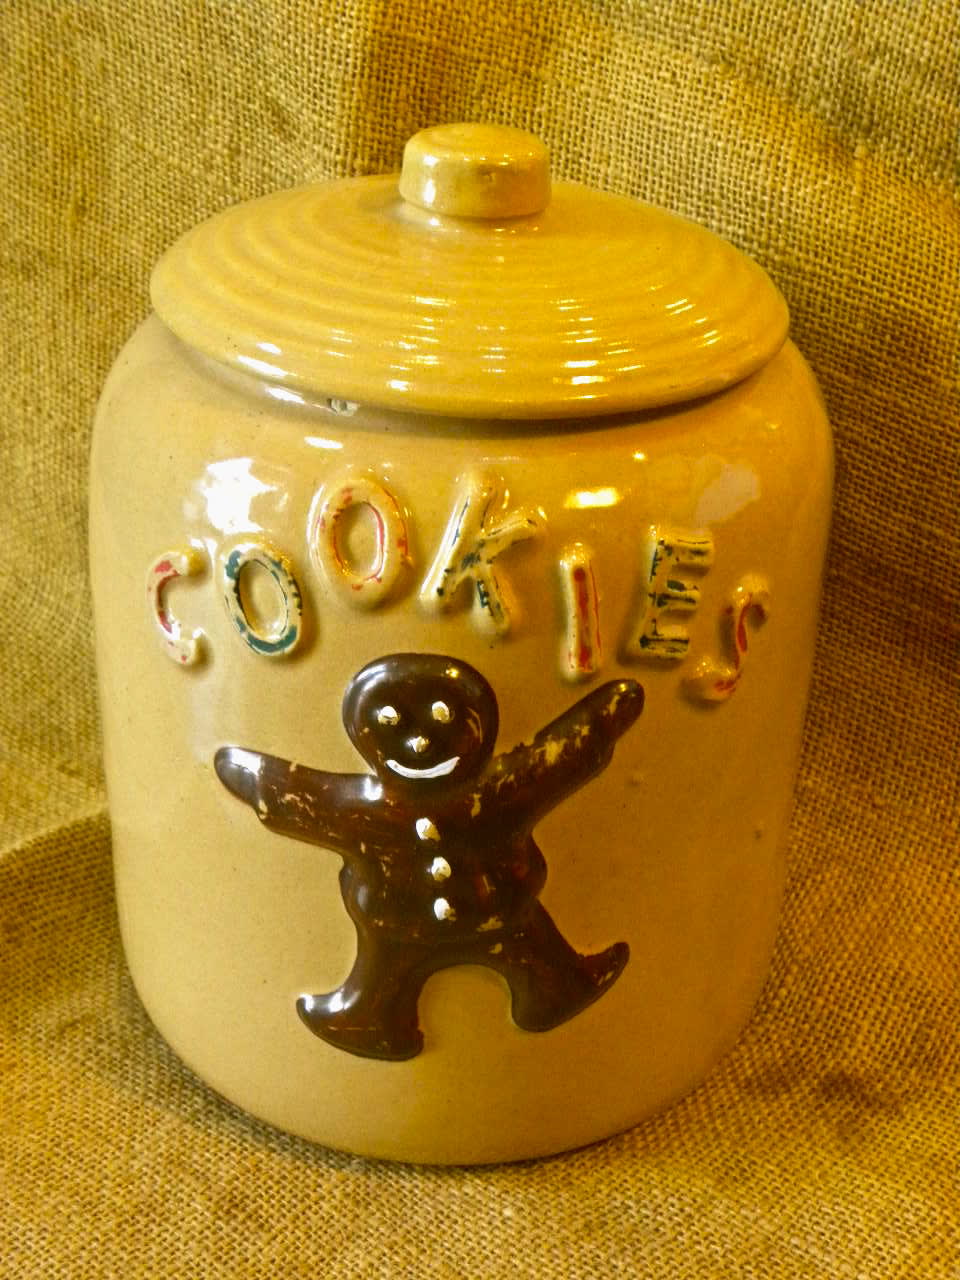 ジンジャーブレッドマンのクッキージャー Mccoy S Country Store Blog